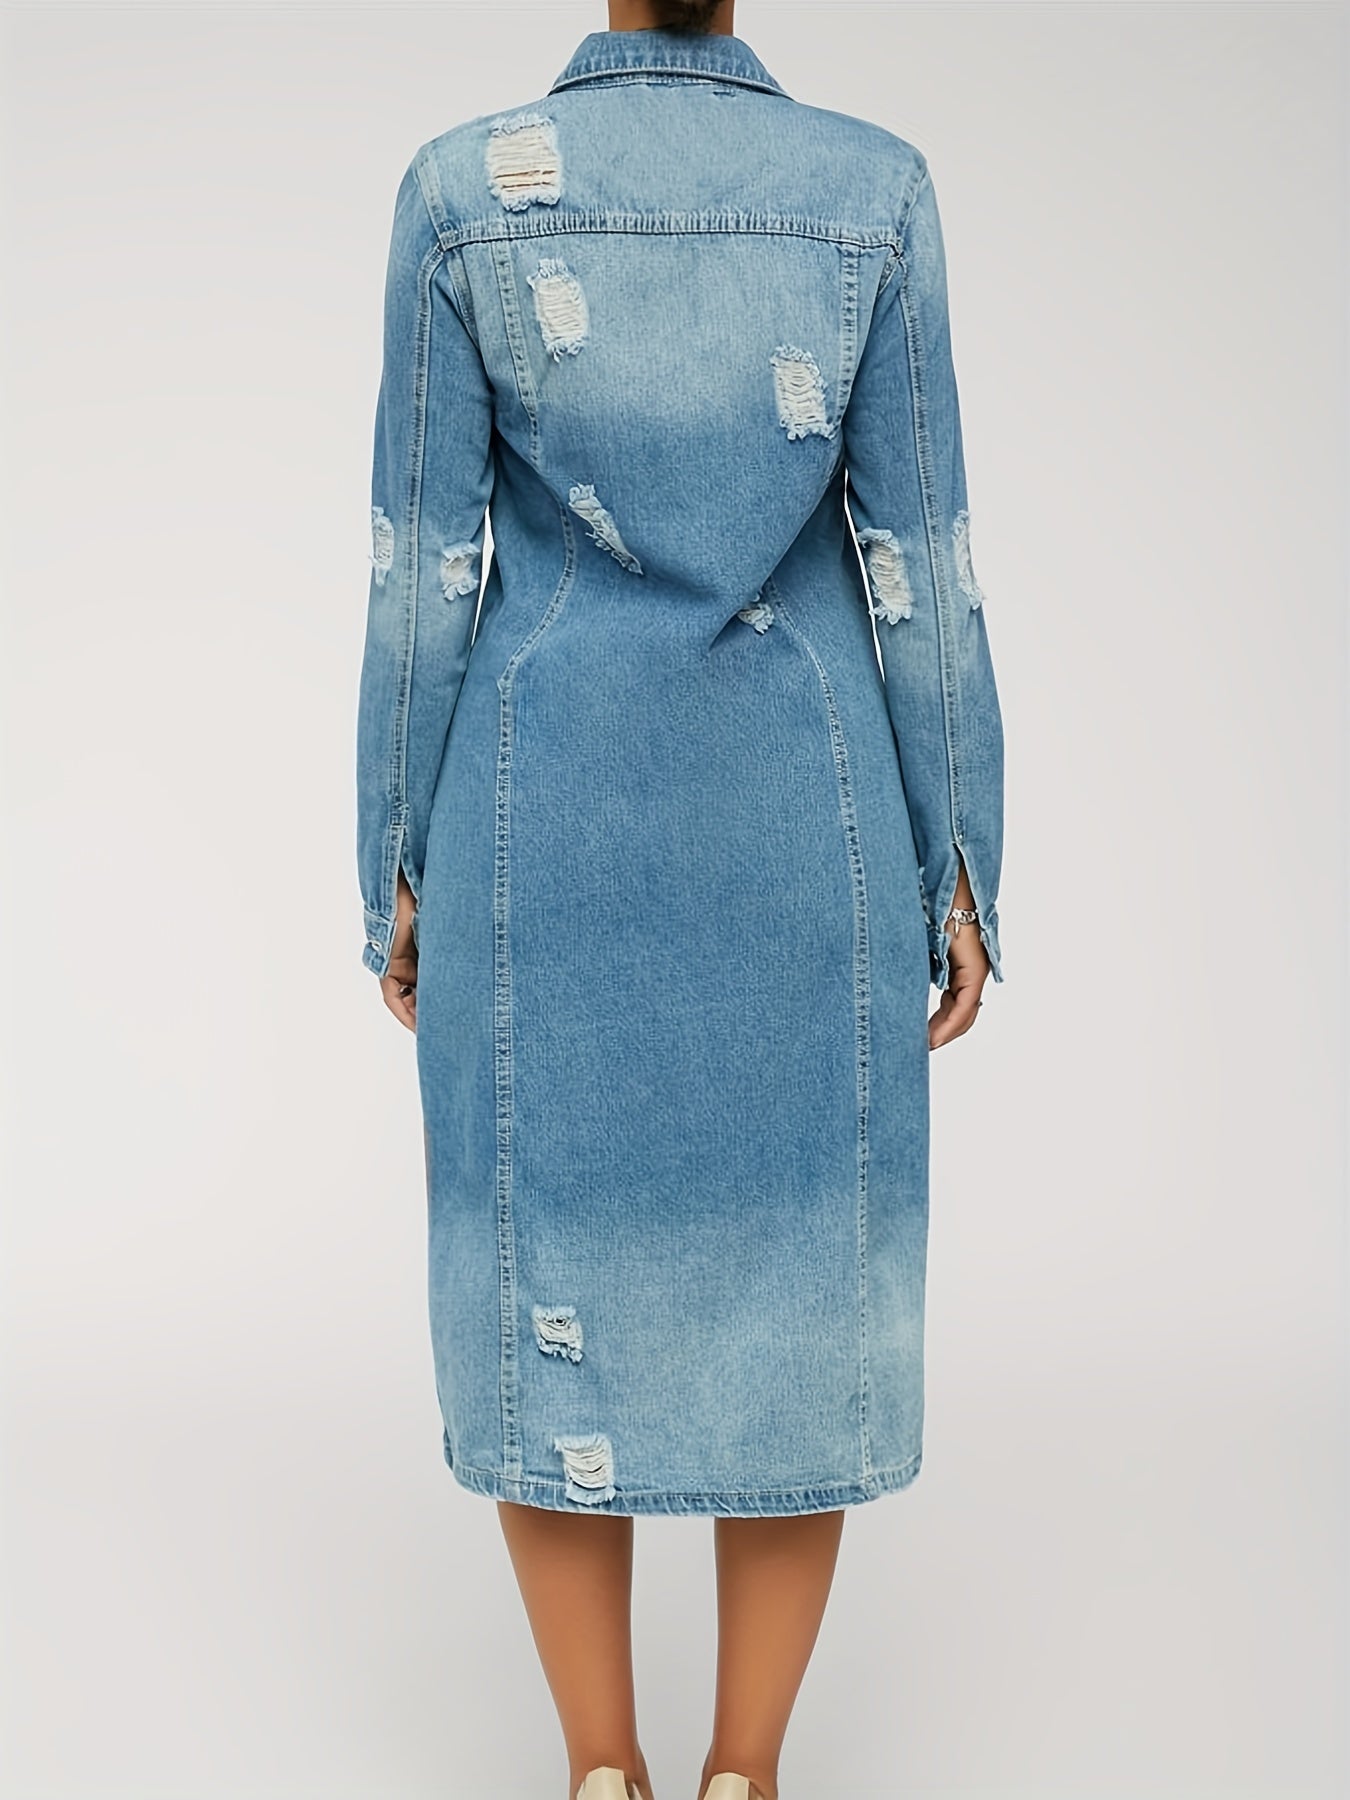 Lovevop-Distressed Front Long Sleeve Flap Pocket Knee Length Washed Blue Denim Dress Denim Jacket Long Coat, Women's Denim Jackets & Coats